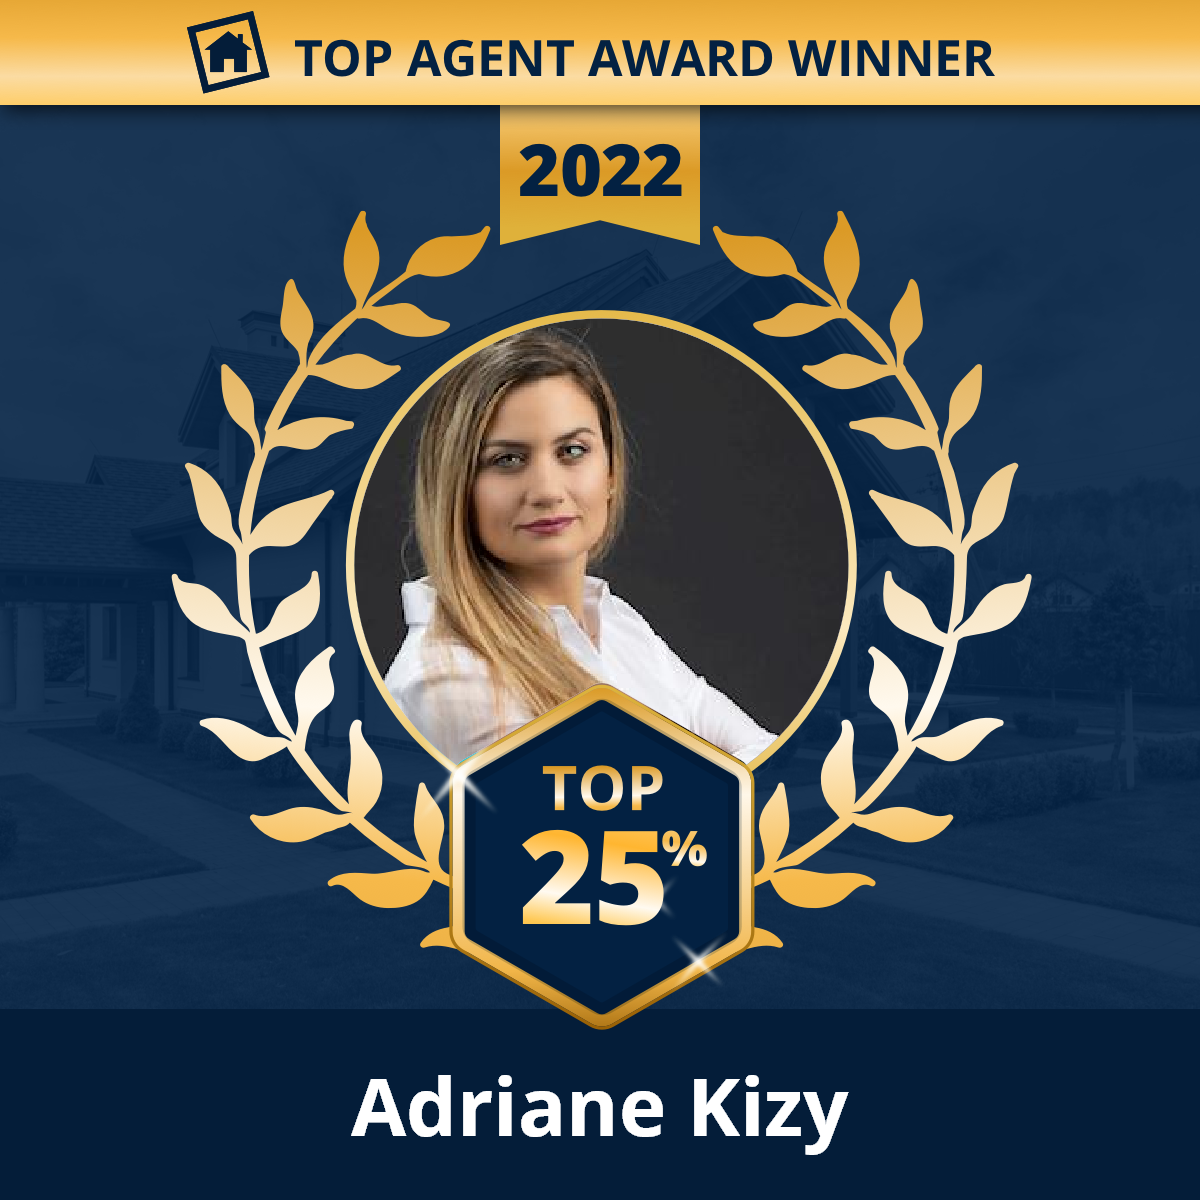 Adriane Kizy